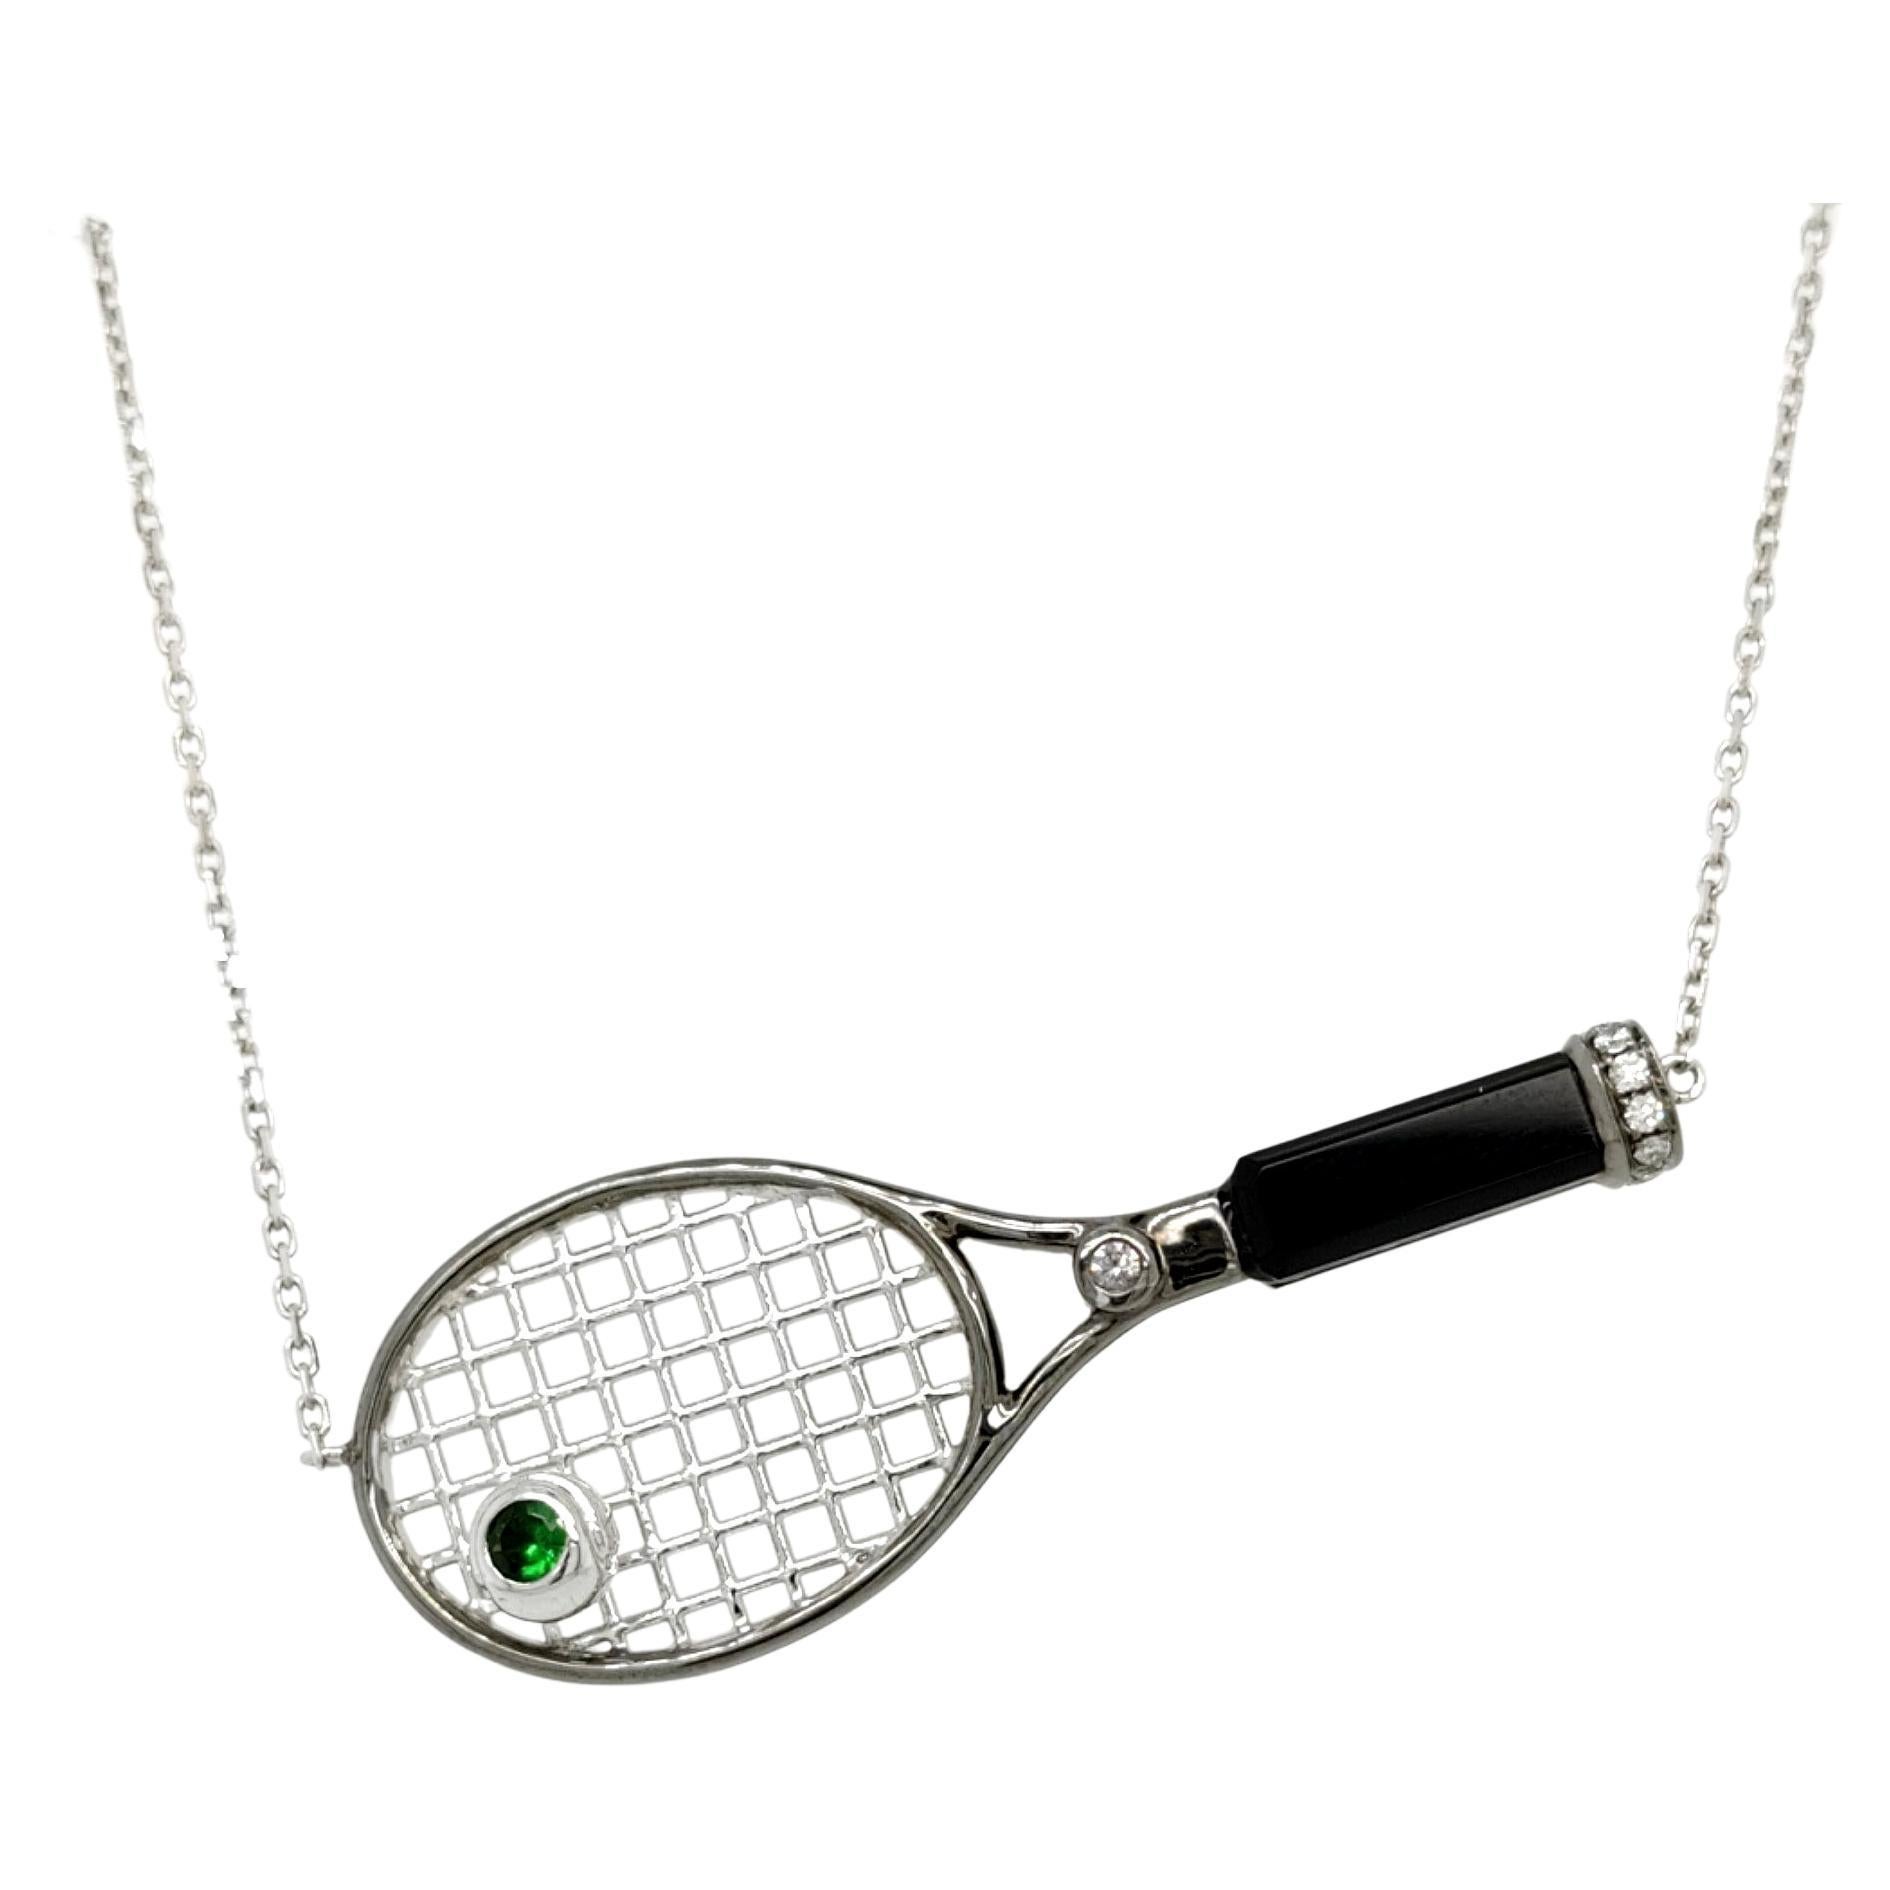 Collier pendentif raquette de tennis en or blanc 18 carats avec diamants, grenat vert et onyx